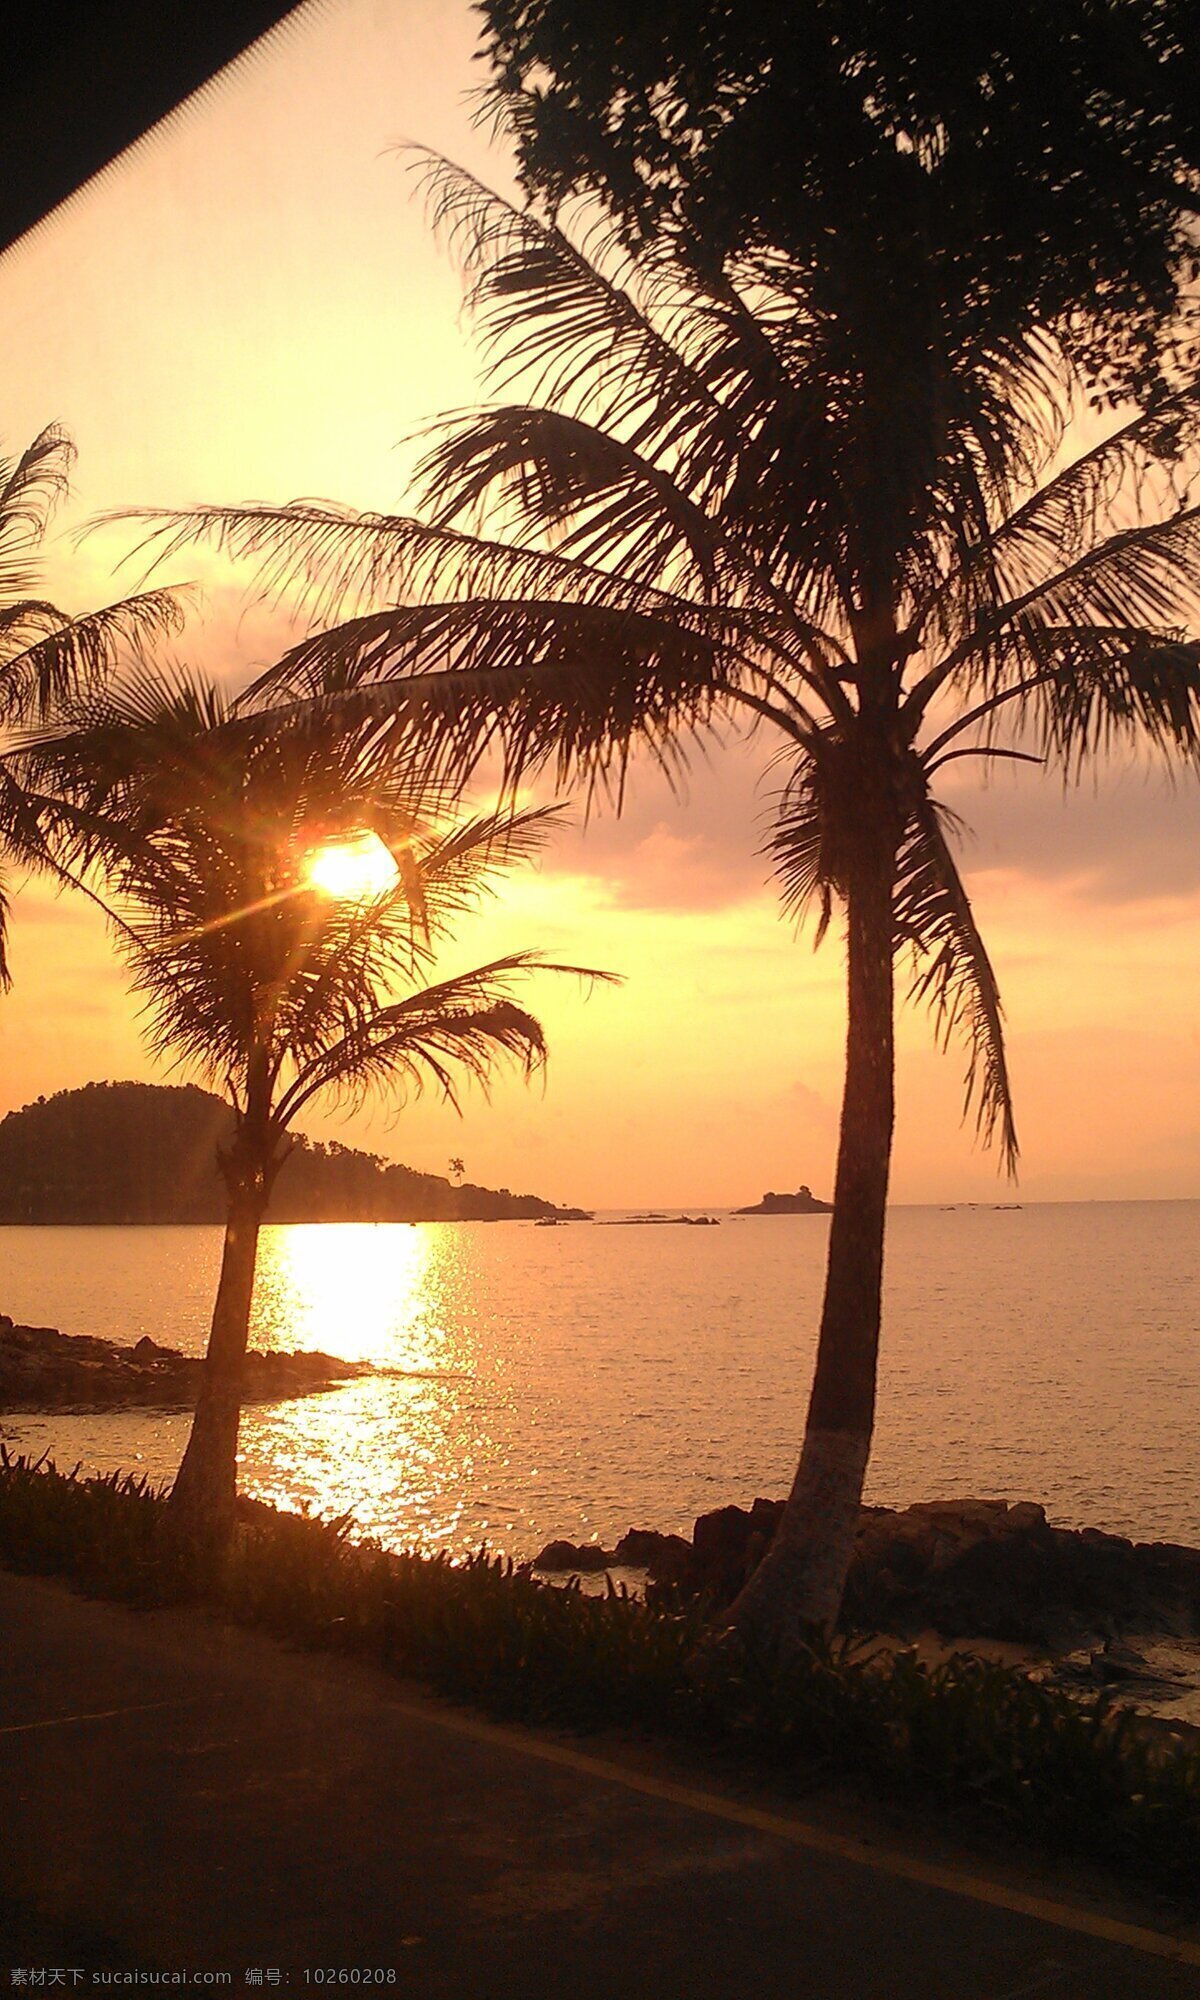 光影 海边 海滩 日落 夕阳 椰树 自然风景 自然景观 海边夕阳椰树 psd源文件